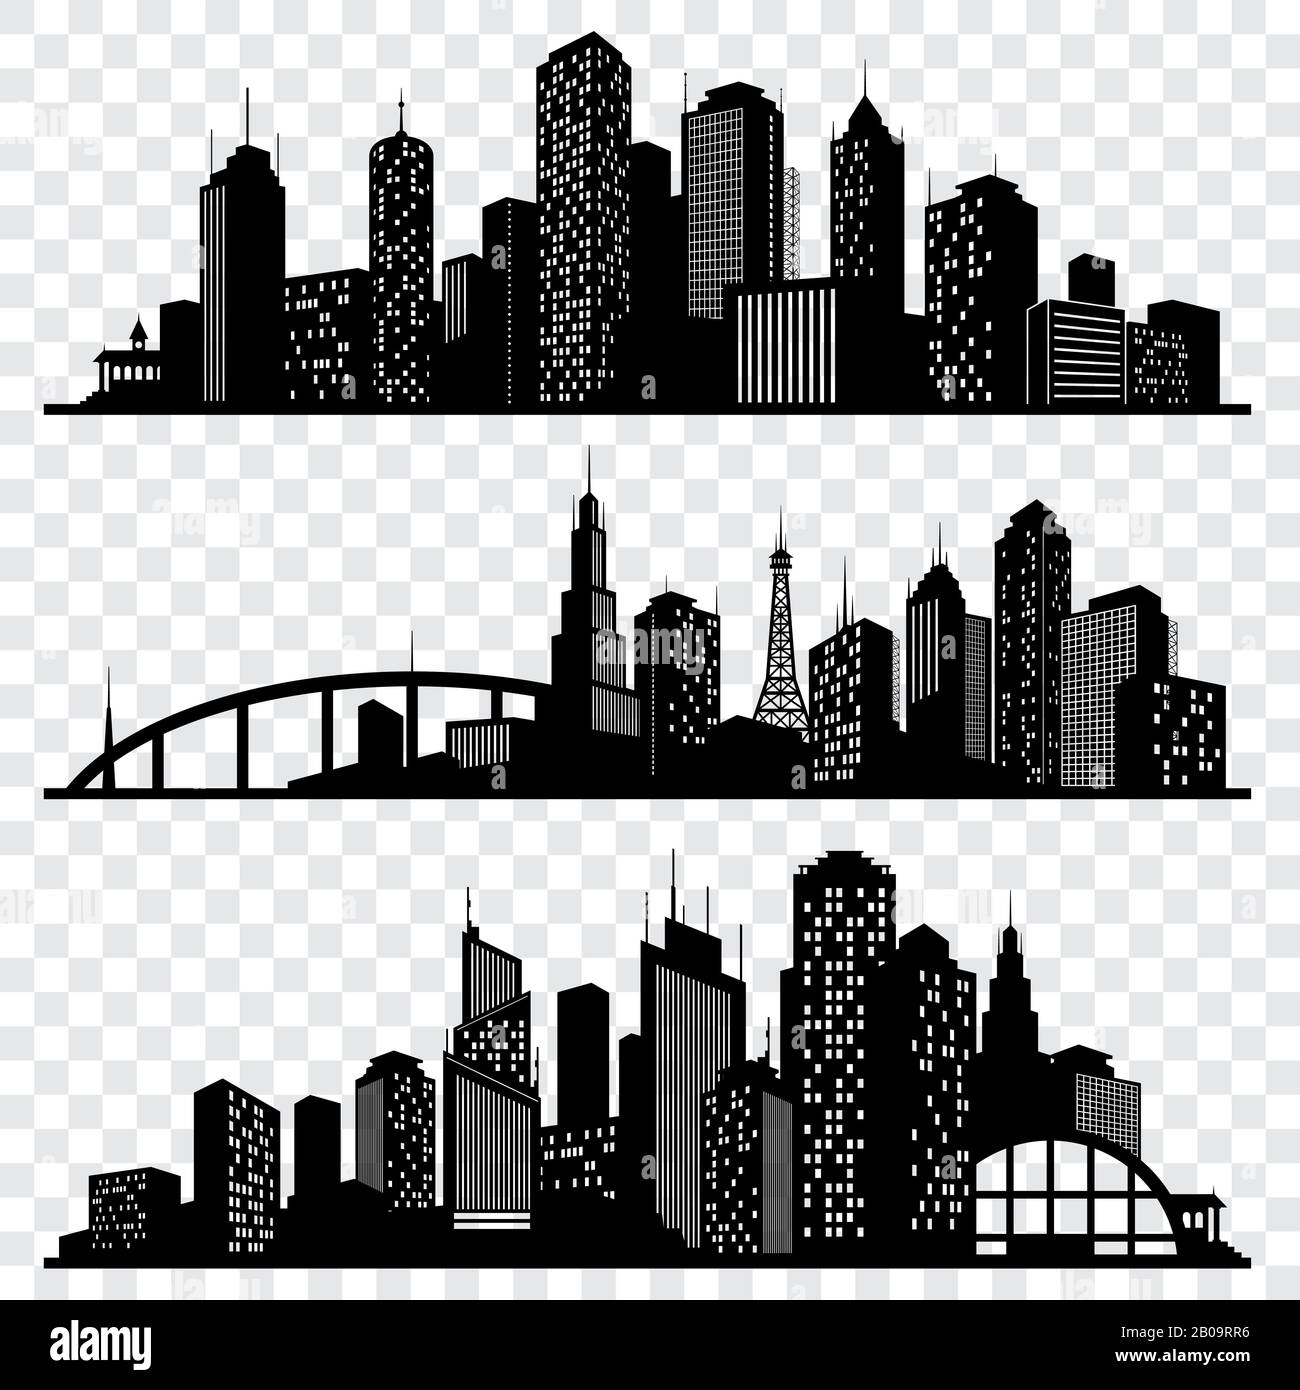 Vektorsilhouetten für Stadtgebäude, Skylines für städtische Vektoren festgelegt. Silhouette der städtischen Architektur, Illustration der Skyline der Stadtarchitektur Stock Vektor